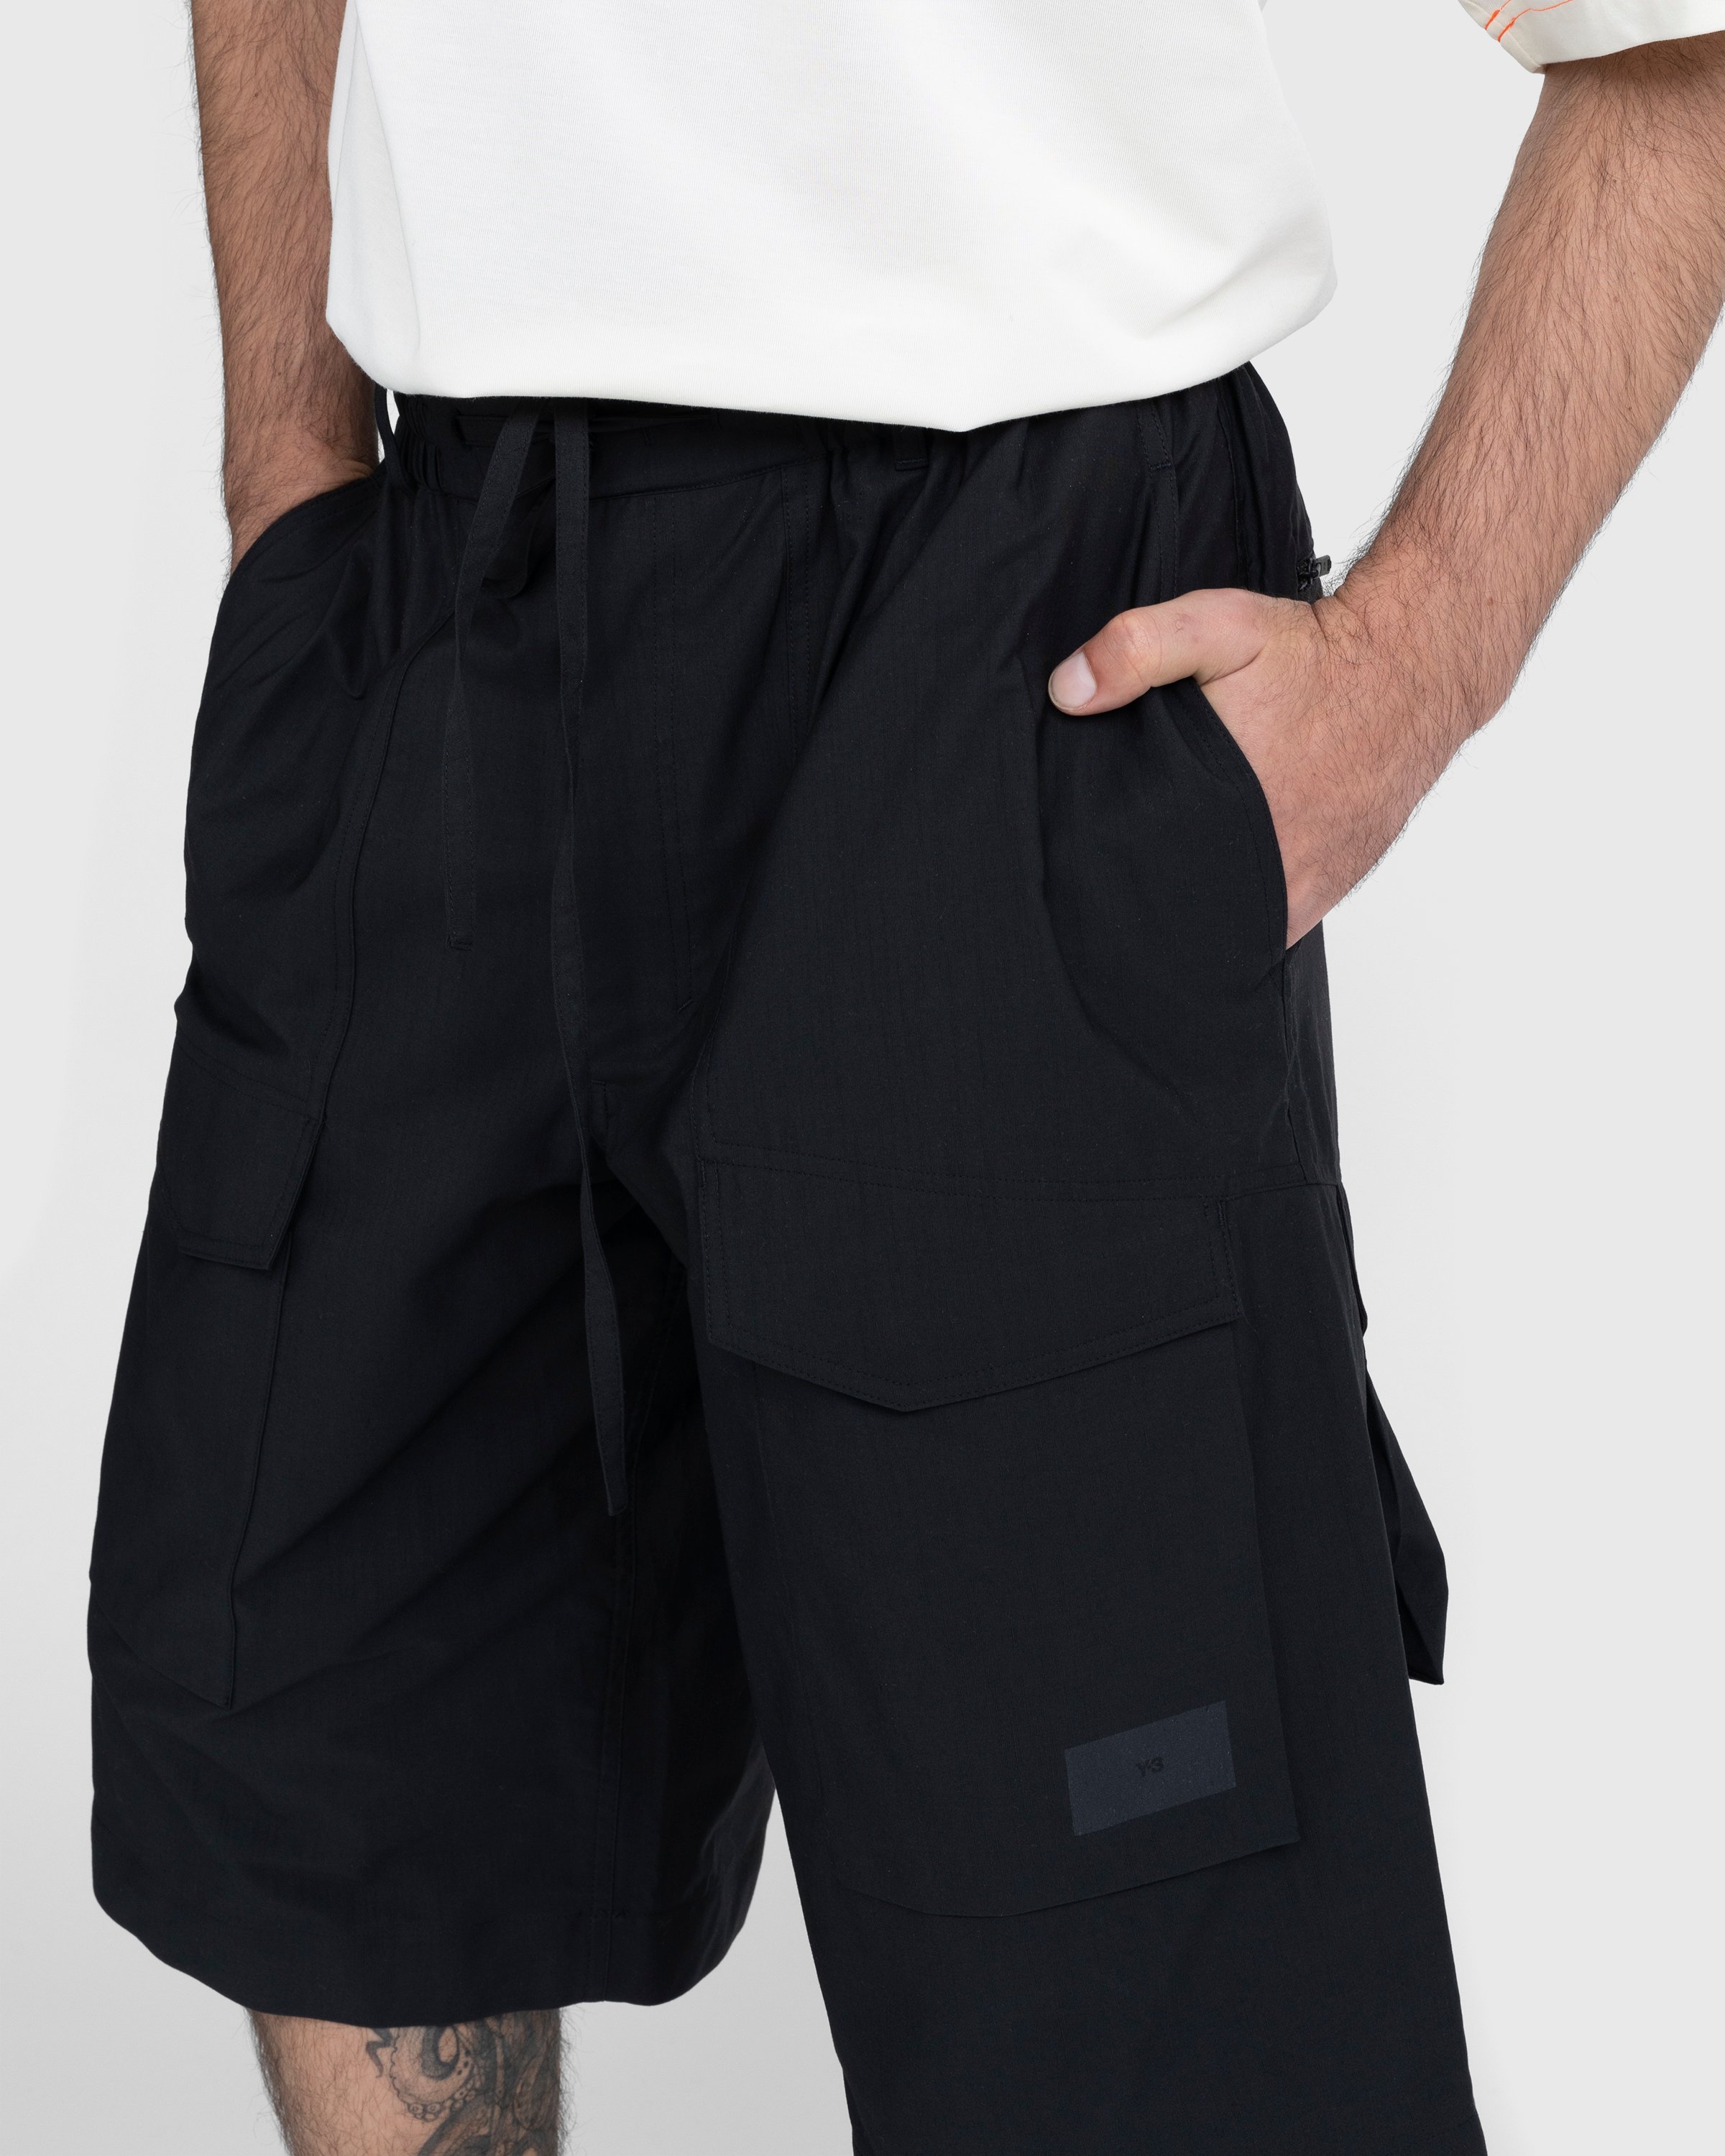 Y-3 - Workwear Shorts Black - Clothing - Black - Image 5